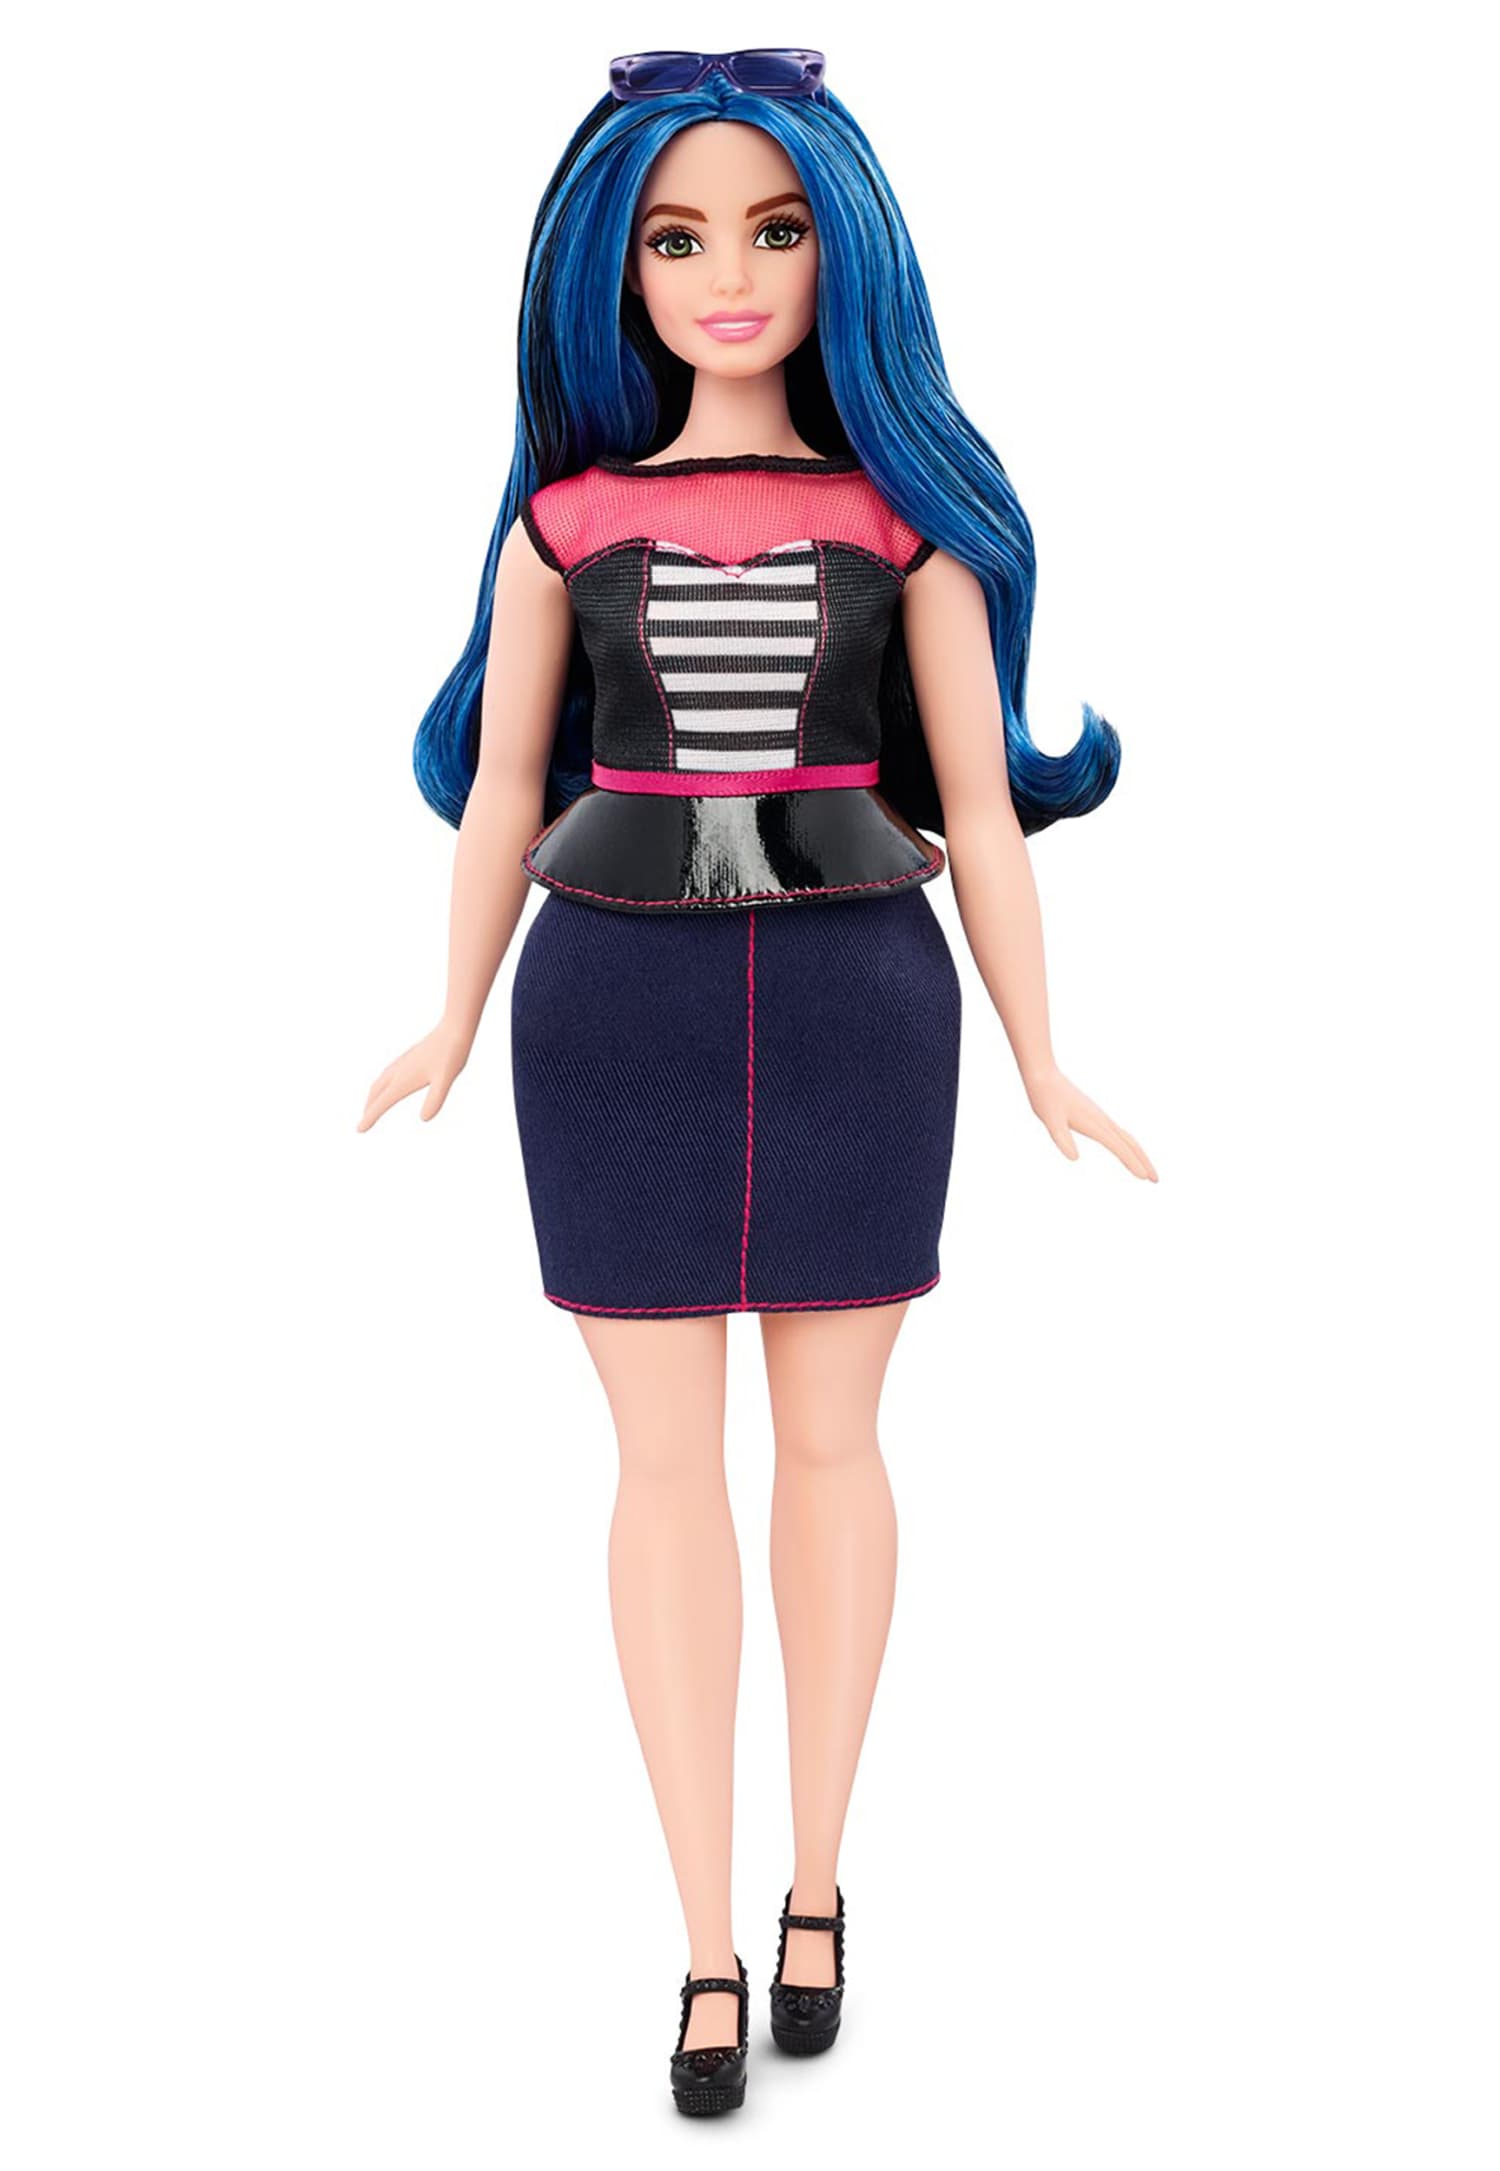 curvy black barbie doll